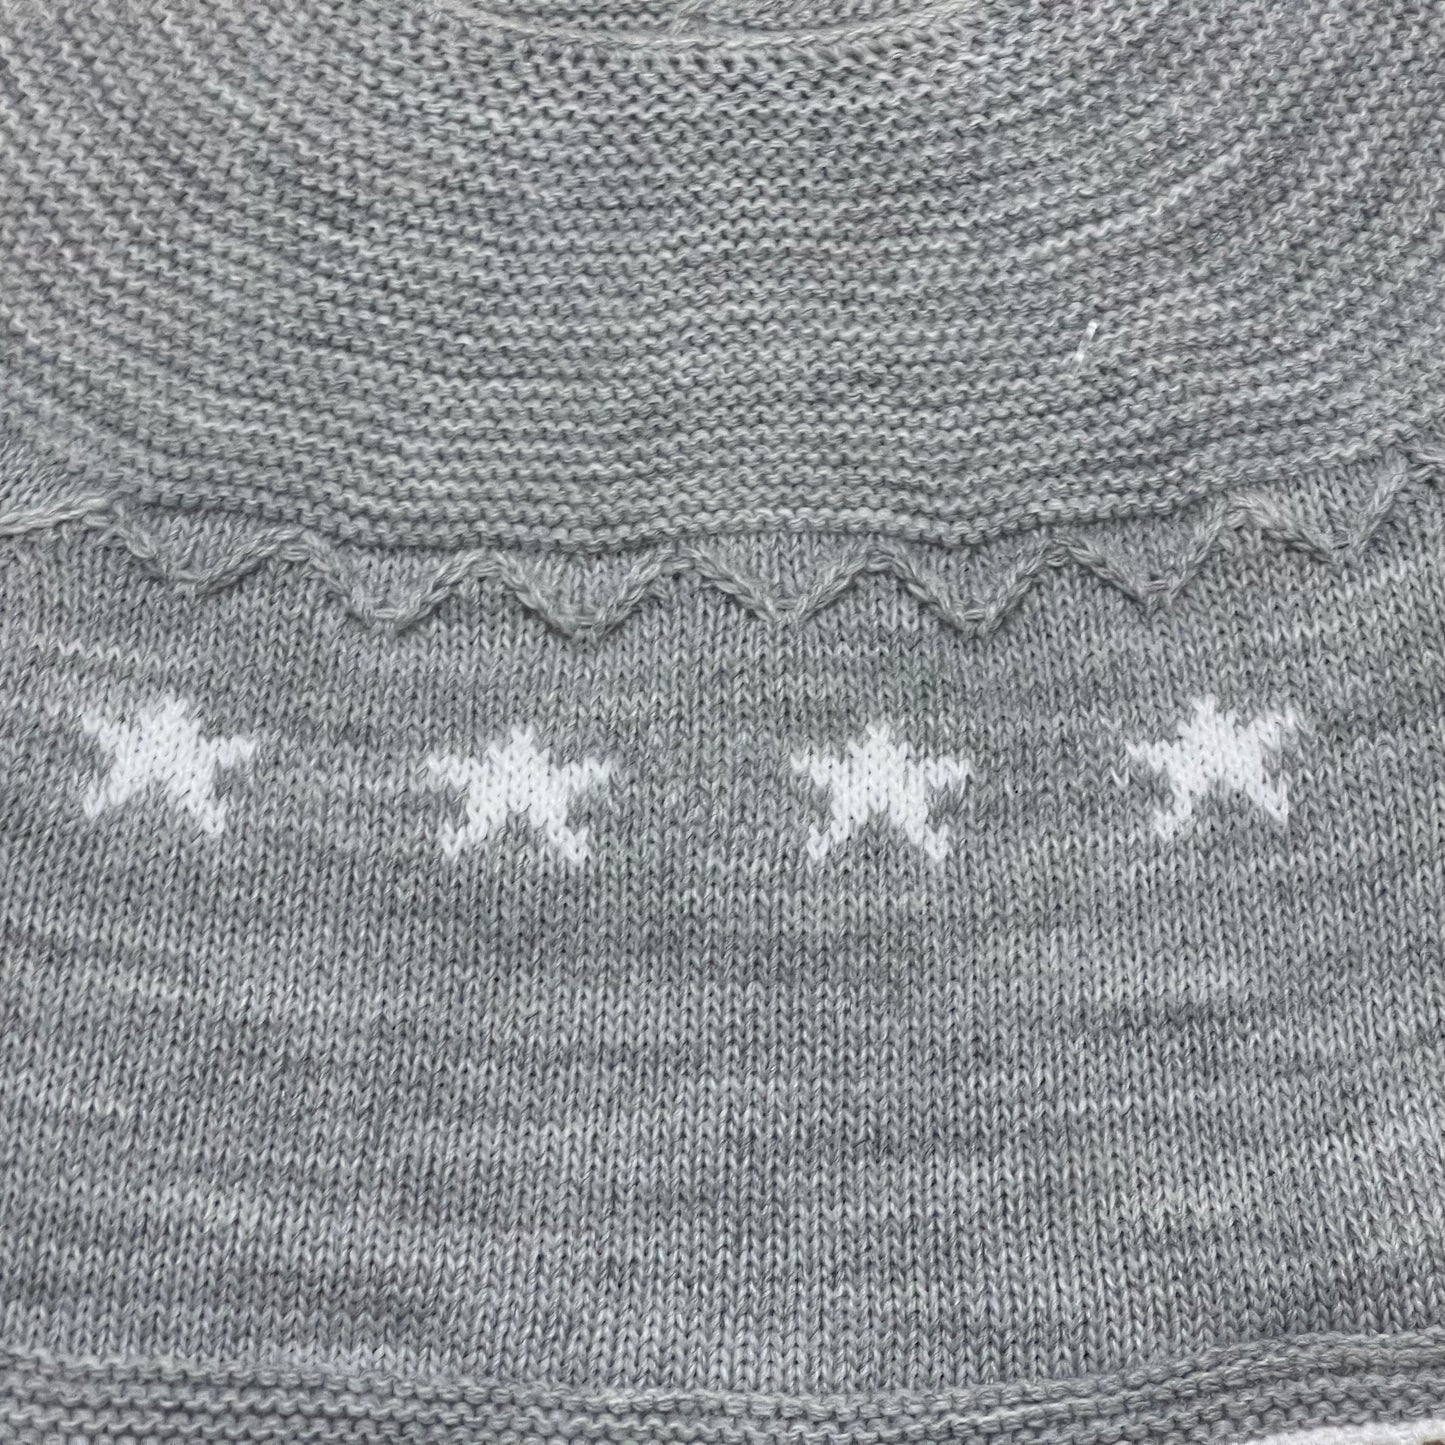 Comprar conjunto de primera puesta de lana. Color gris. Detalle de estrellas blancas. Temporada otoño/invierno.